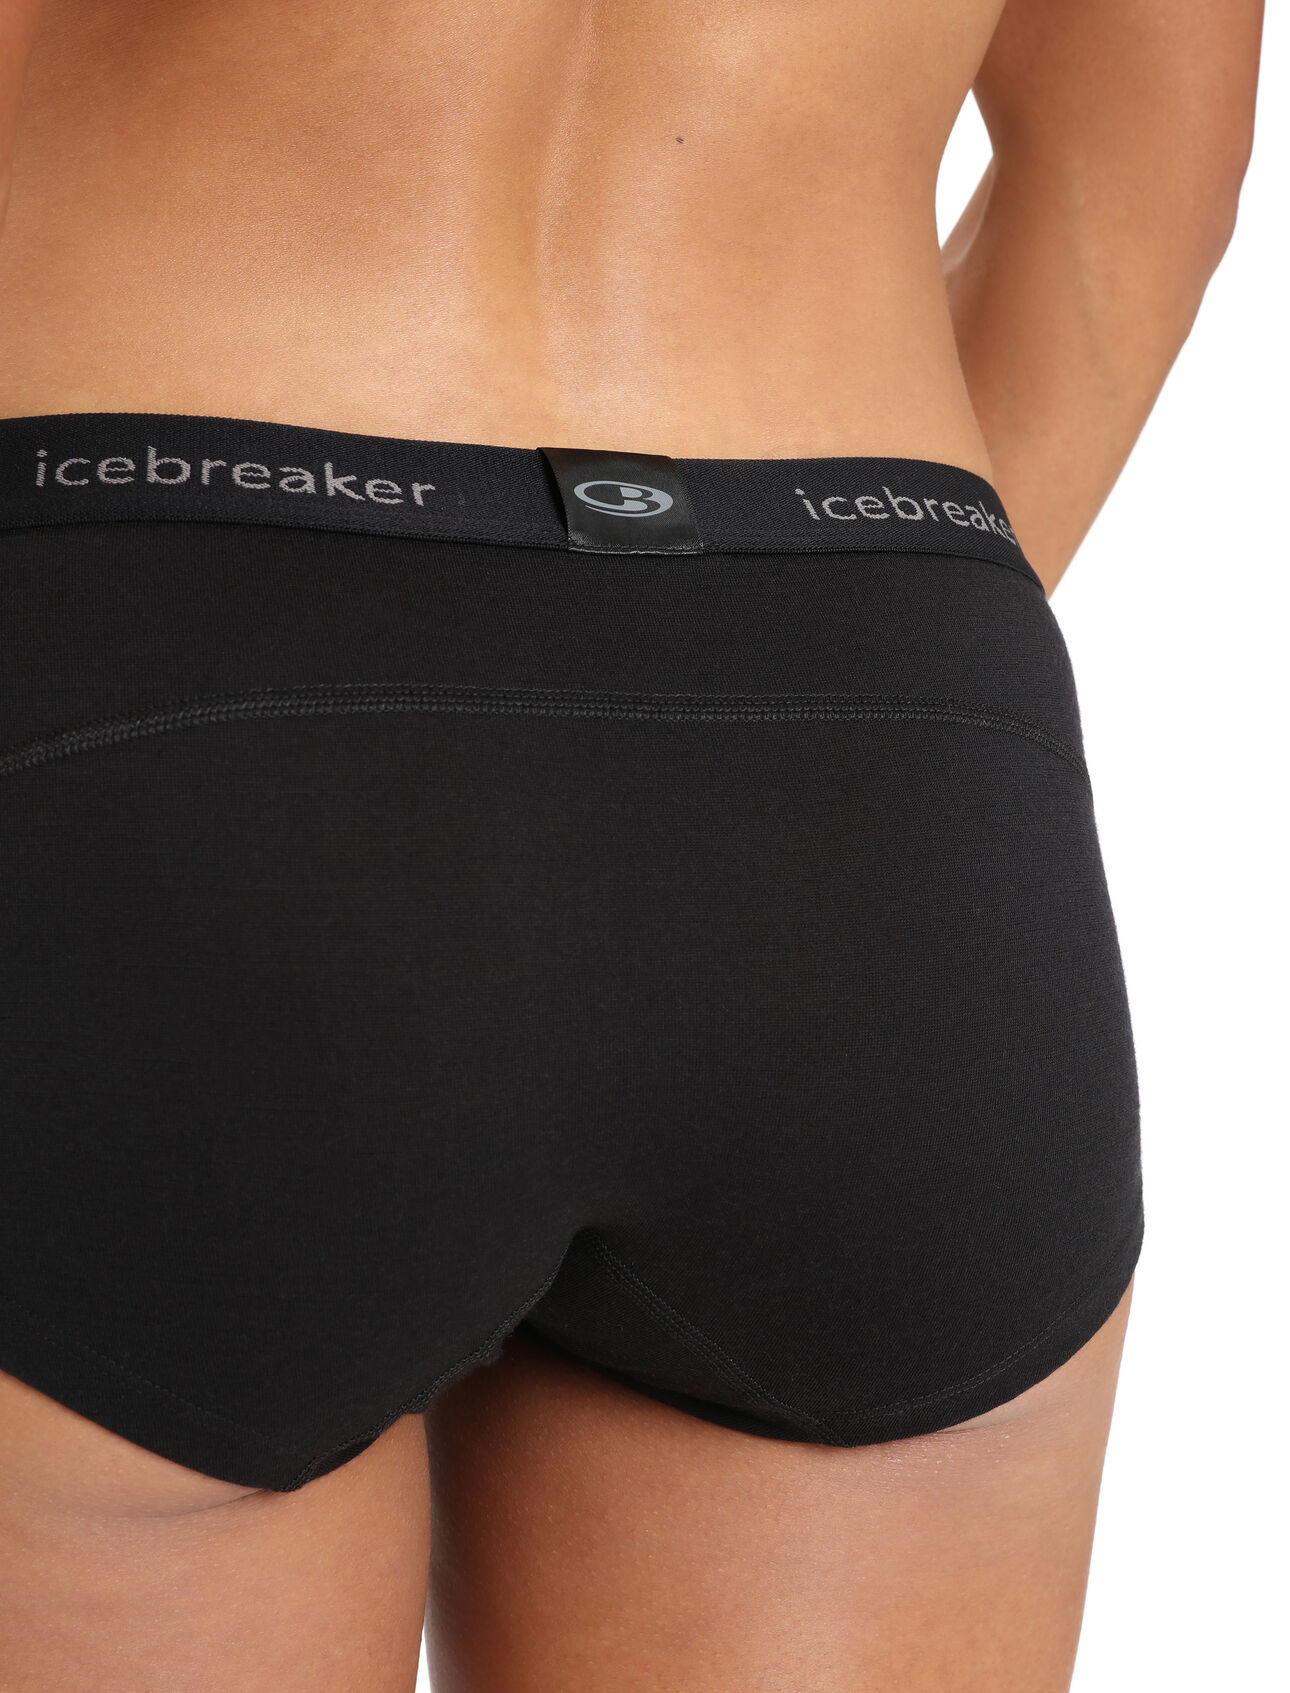 Icebreaker, Intimates & Sleepwear